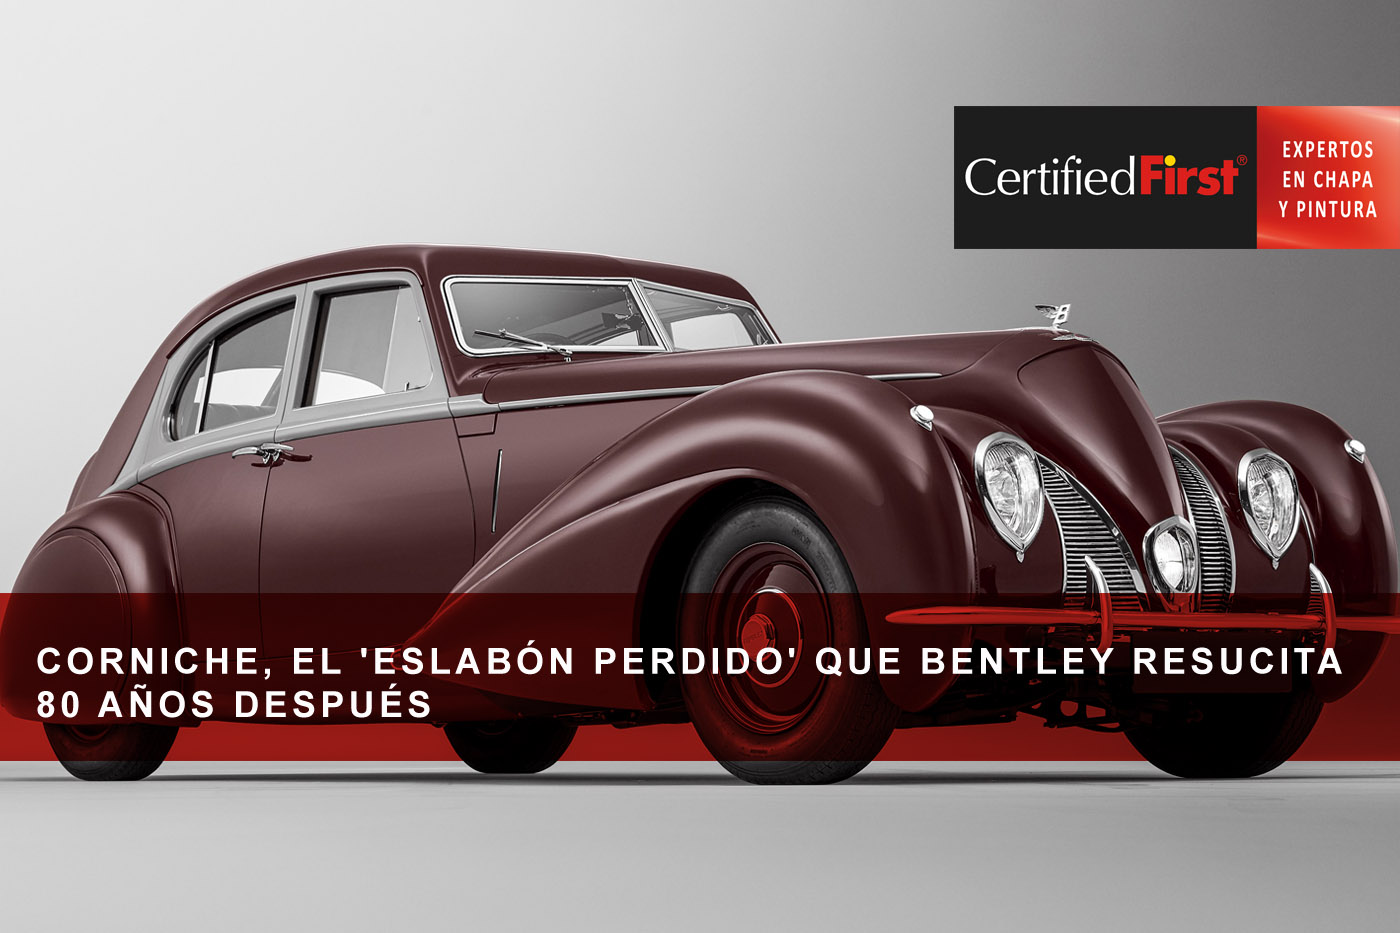 Corniche, el 'eslabón perdido' que Bentley resucita 80 años después